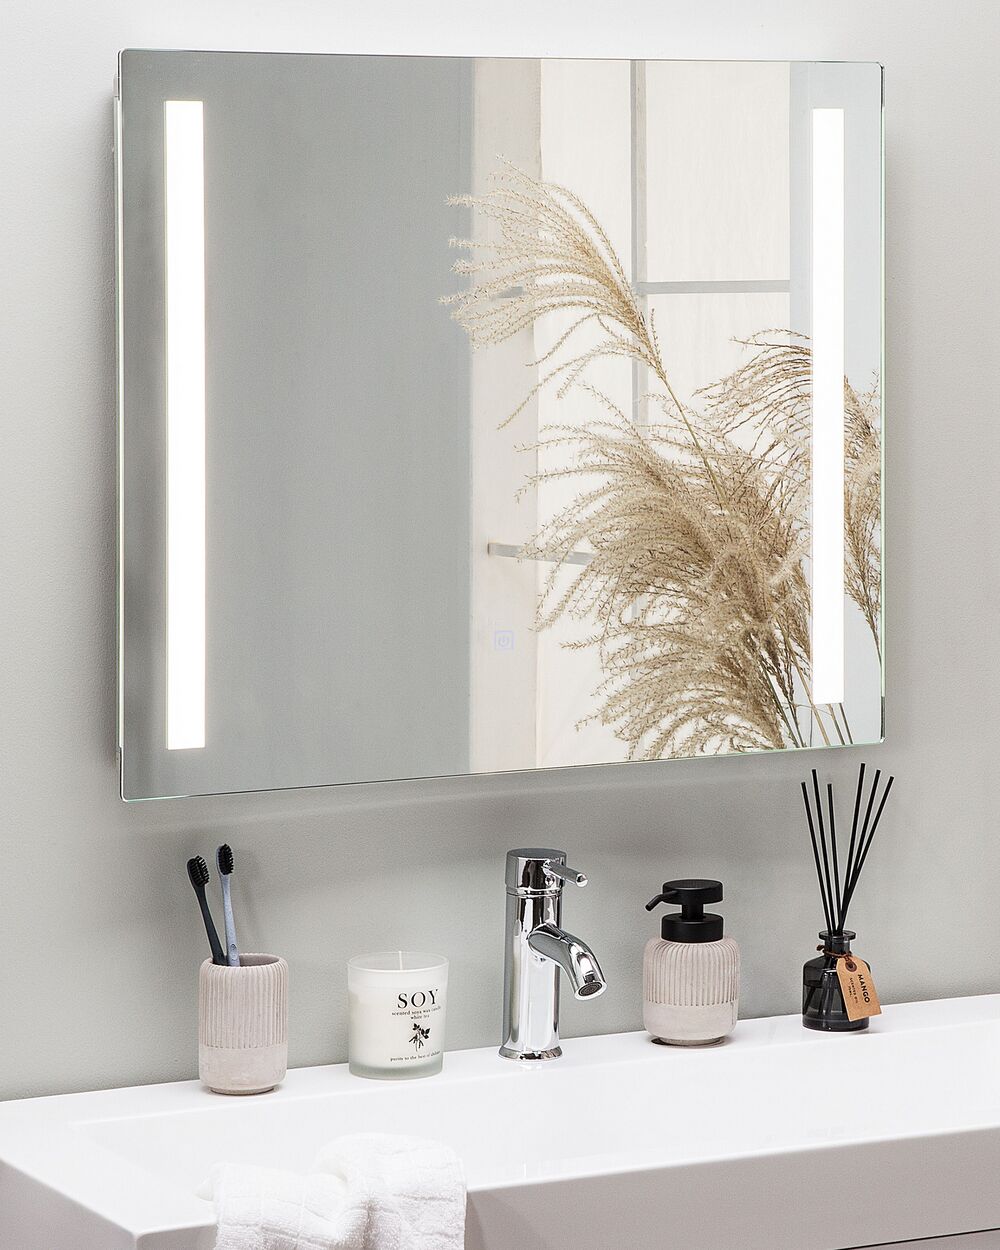 Armoire pour de Salle de Bain avec Miroir et Éclairage LED 70x60 cm Armoire  De Toilette